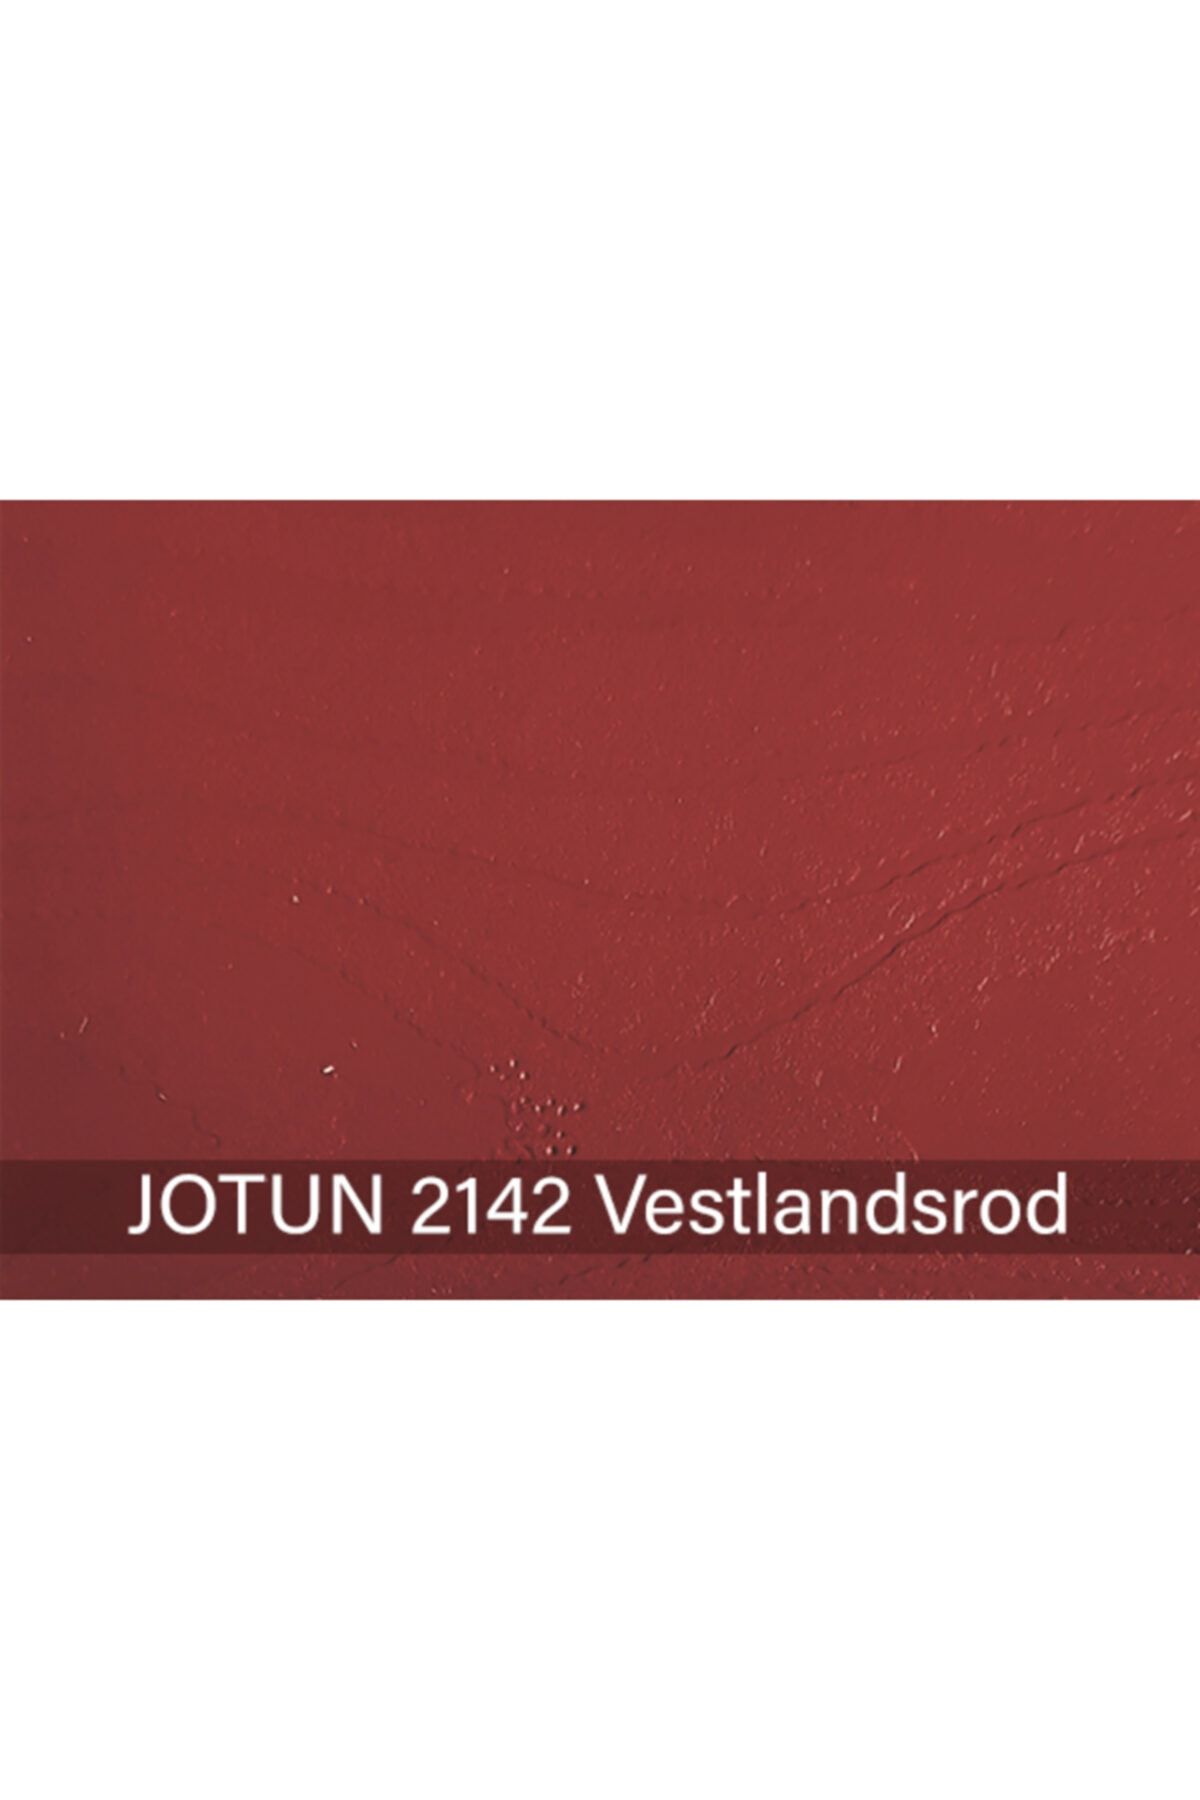 Jotun Vestlandsrod 2142 Demidekk Ultimate Fönster Ahşap Boyası 1 lt